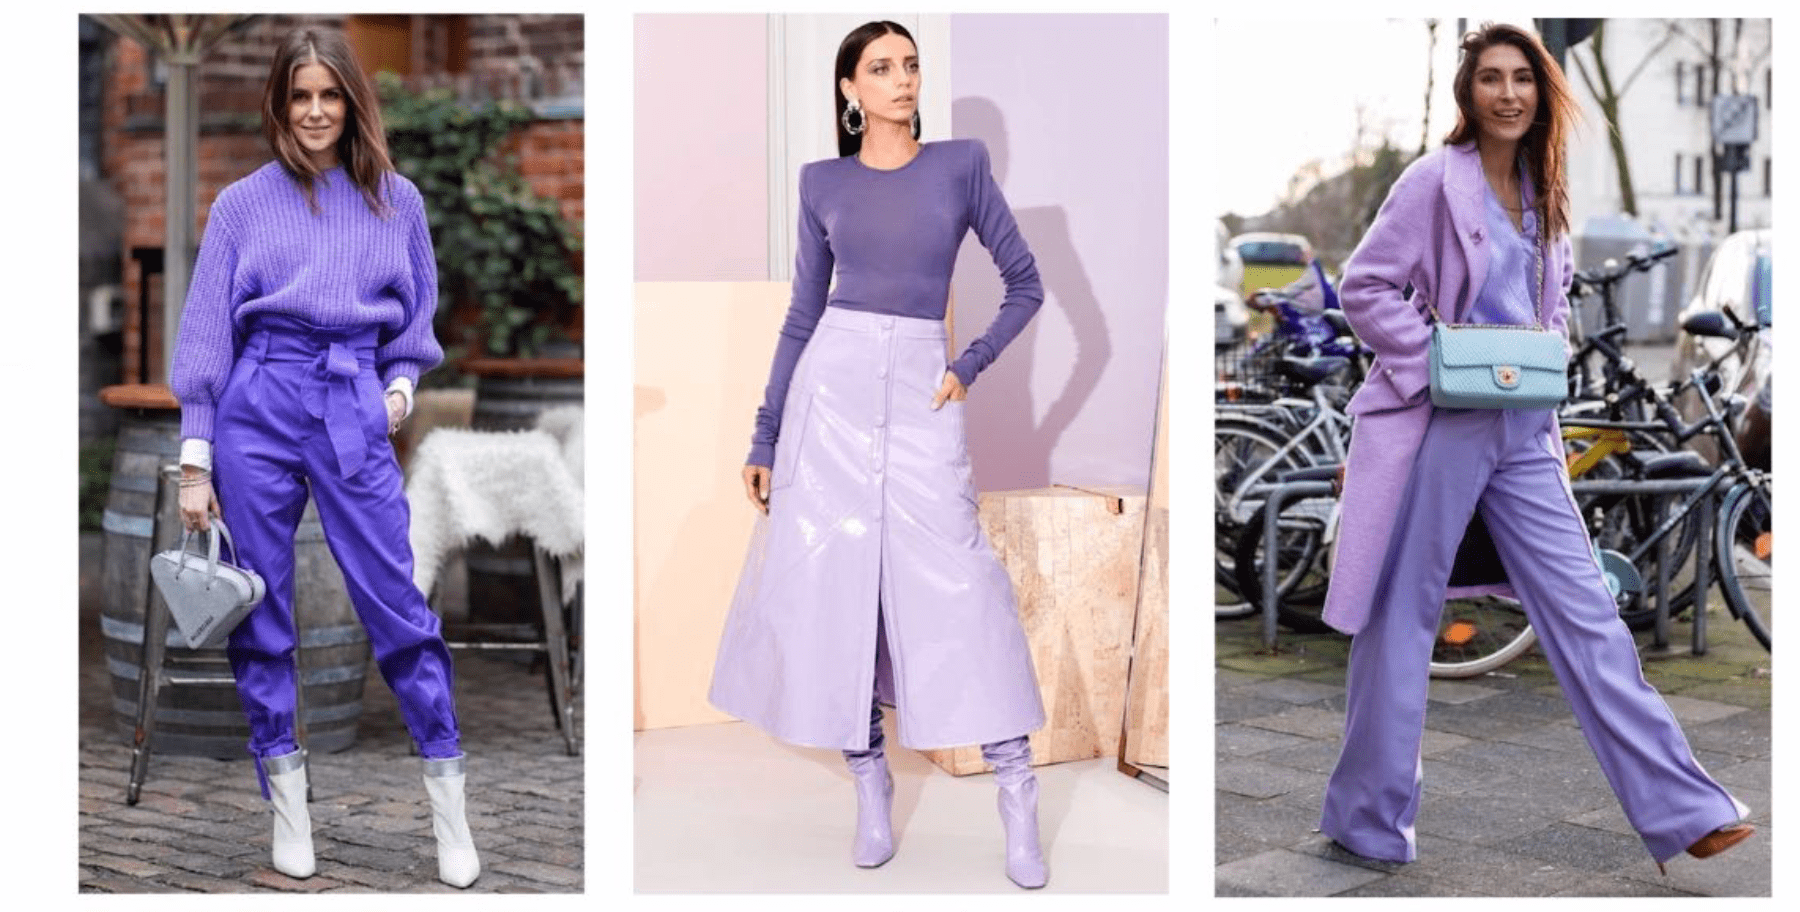 高级色彩搭配 服装搭配之紫色搭配法?